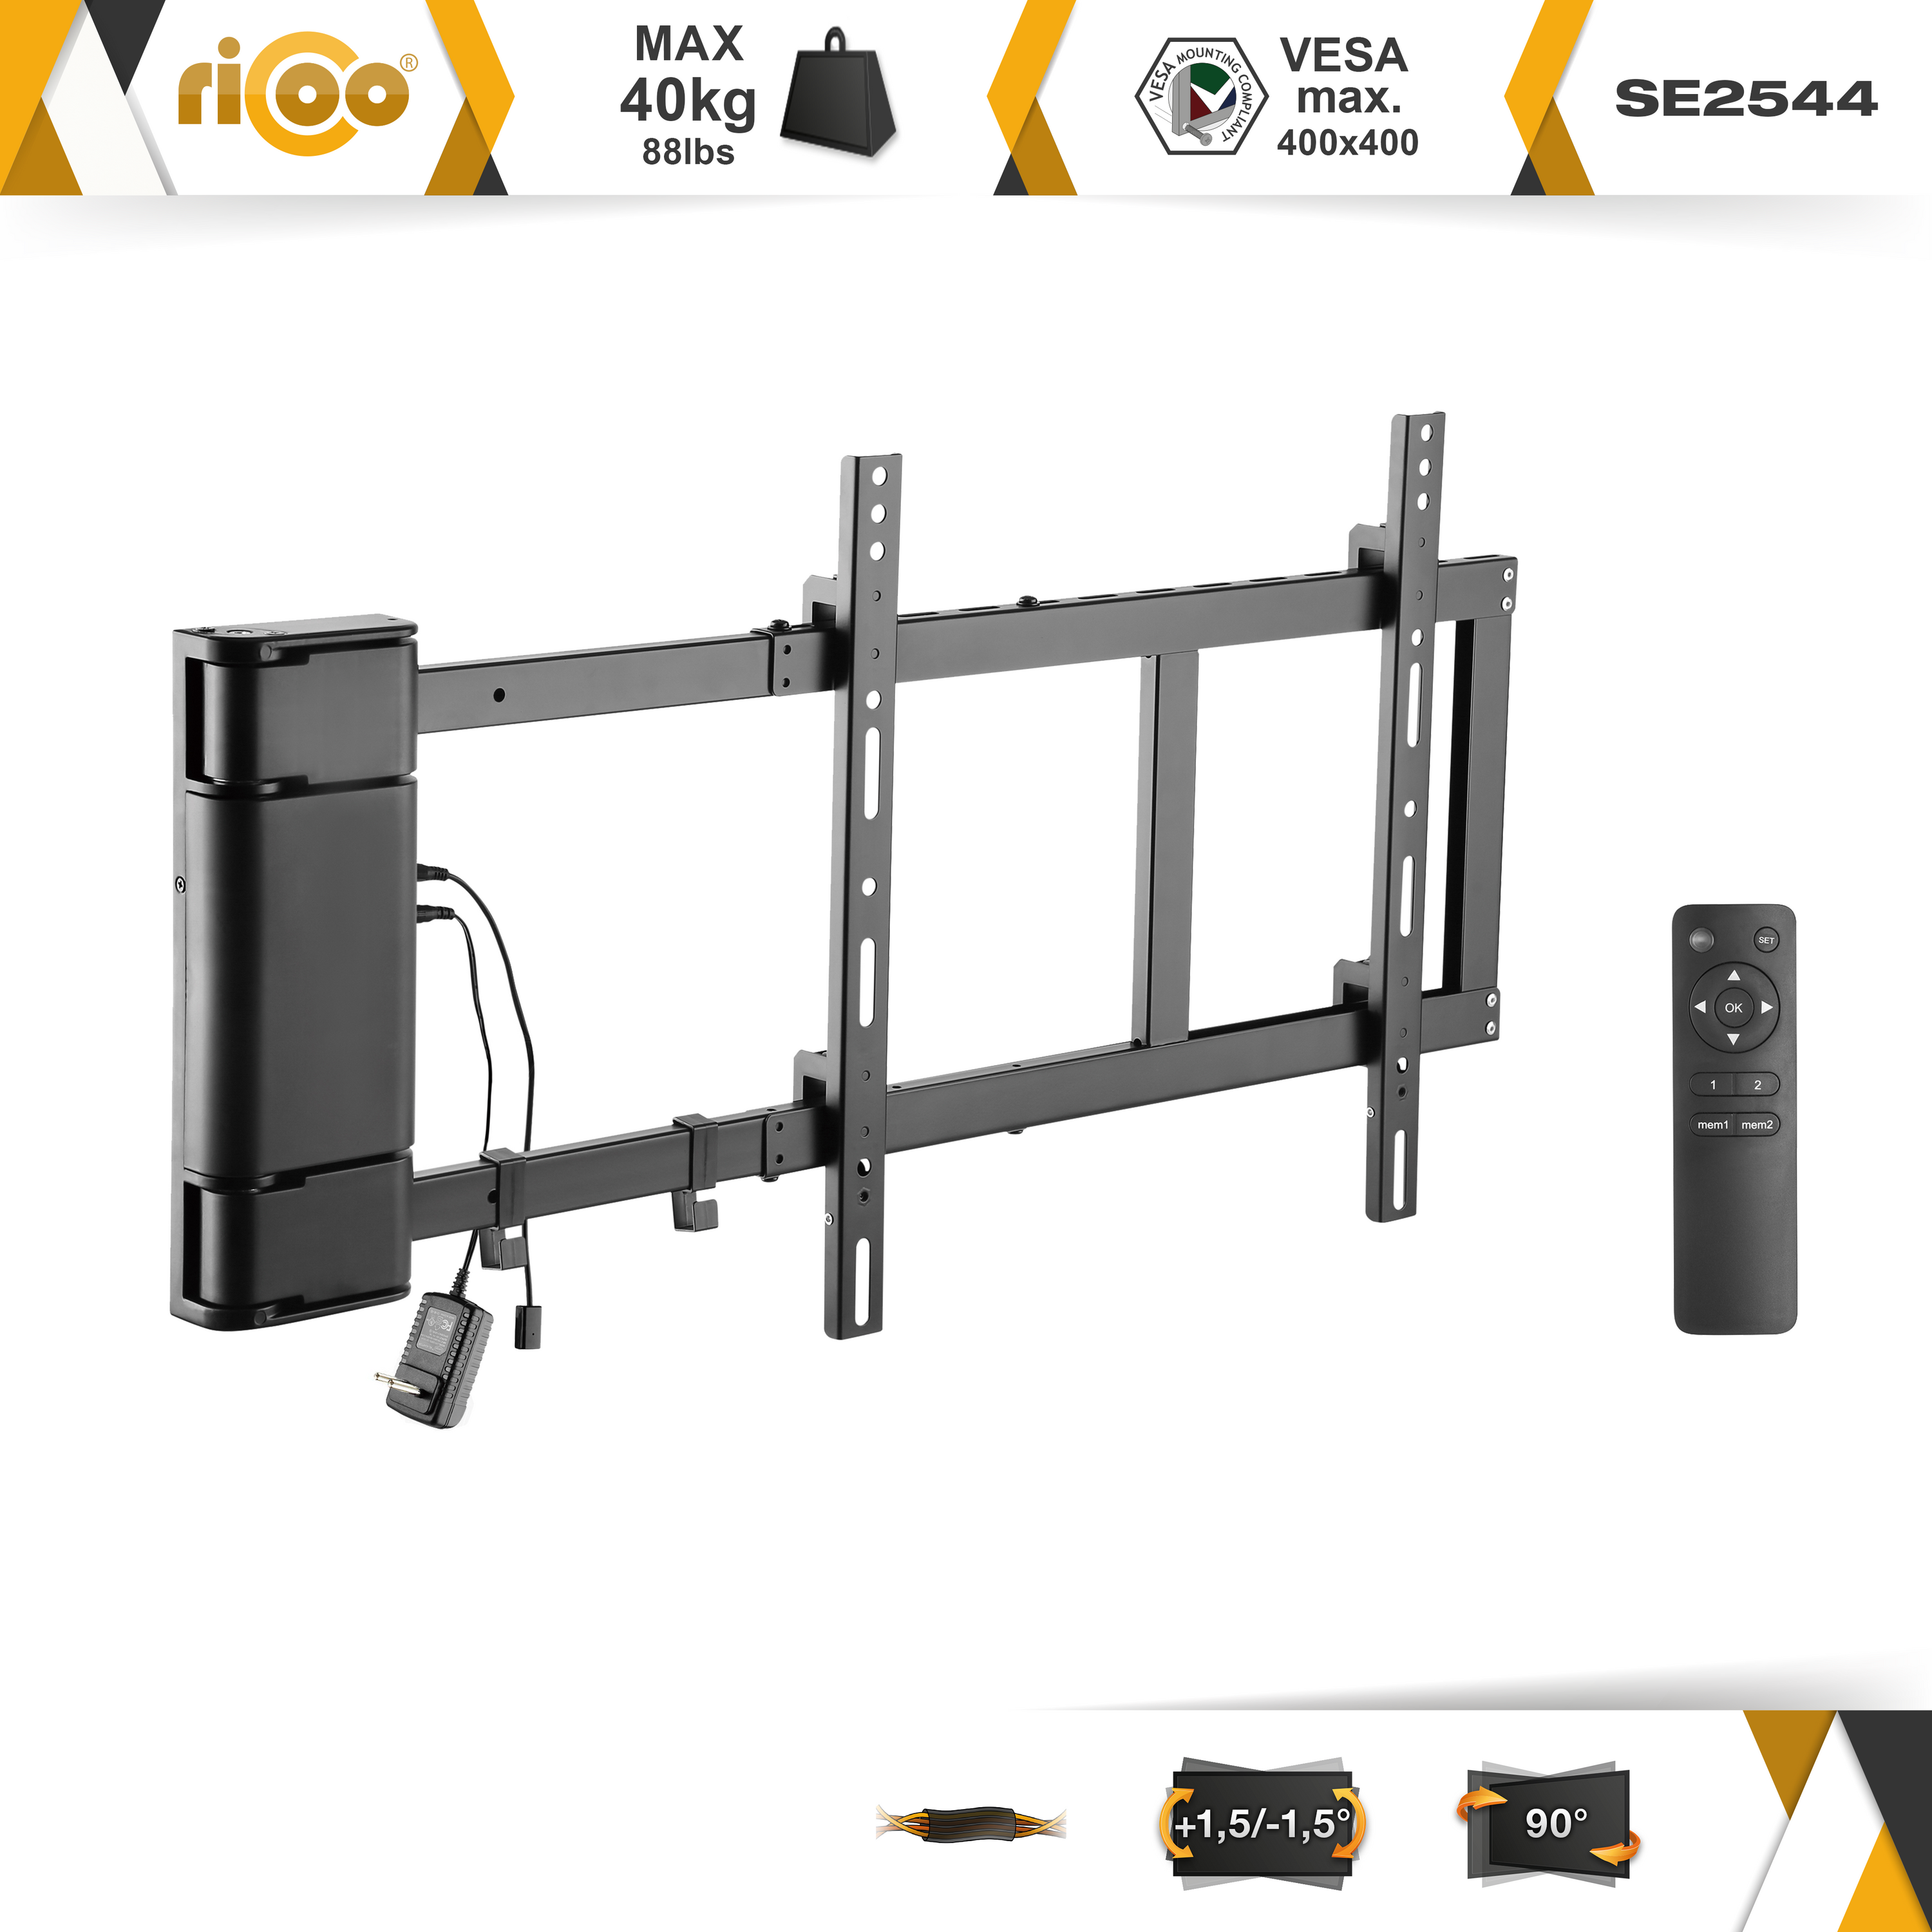 RICOO SE2544 elektrisch schwenkbar 400 VESA universal bis ausklappbar TV x Halterung Schwarz 400 Fernseher Wandhalterung